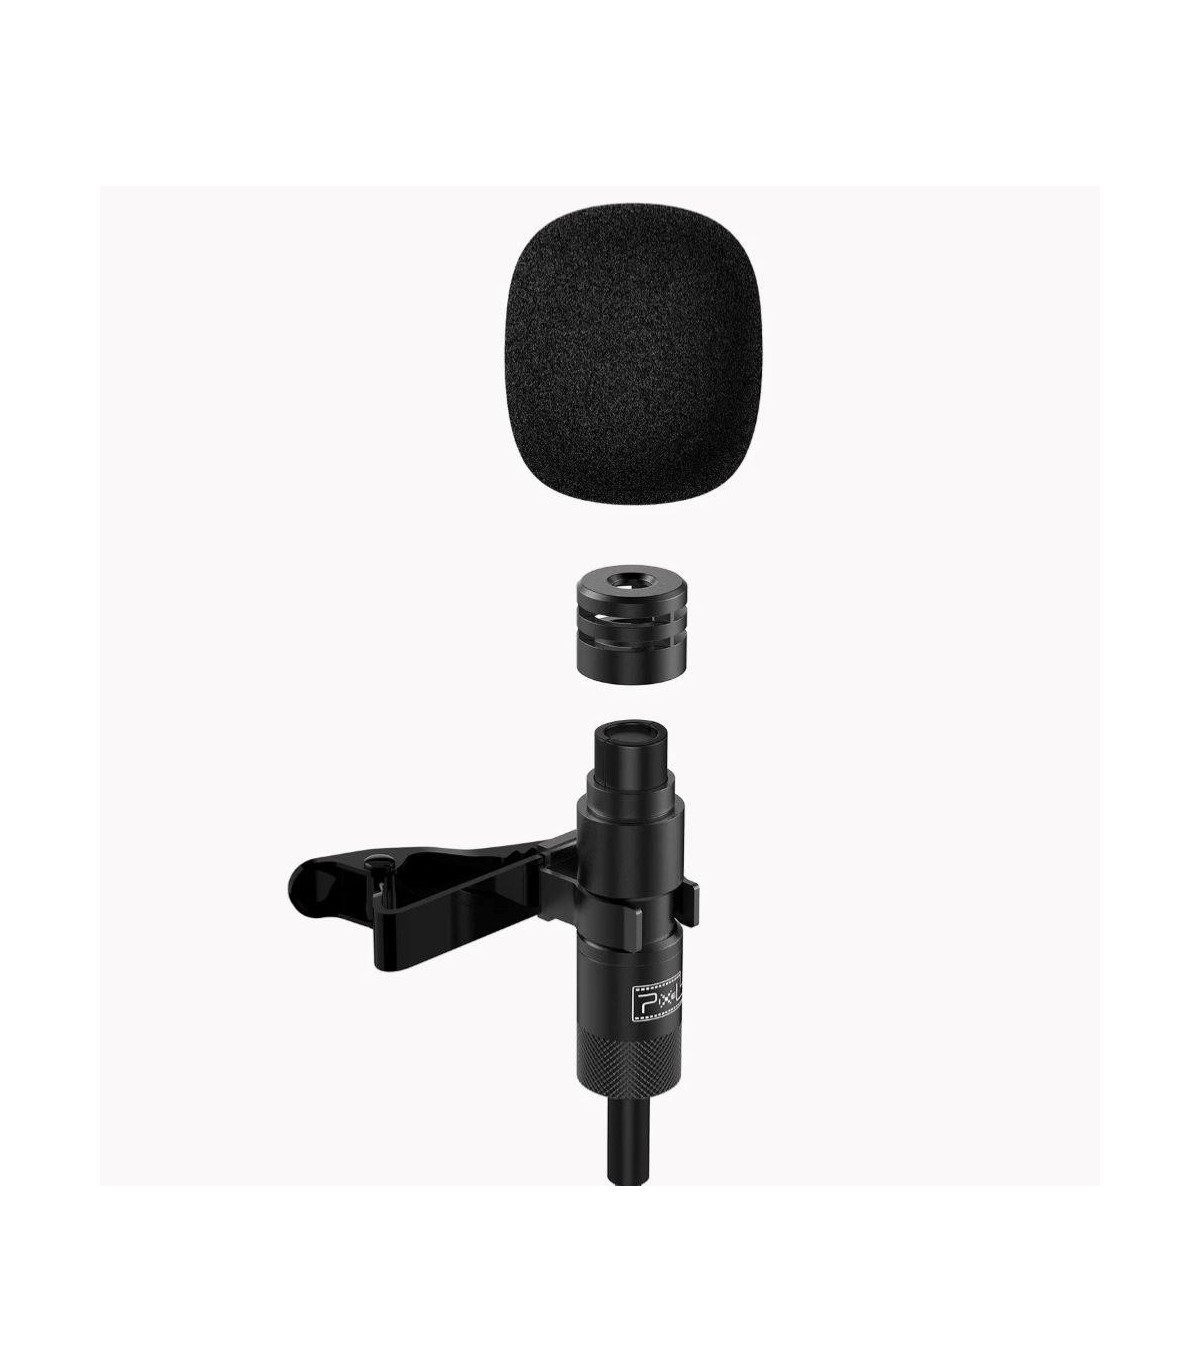 Pixel Microphone cravate MFi pour iPhone/iPad, enregistrement  omnidirectionnel et microphone-cravate avec qualité sonore haute fidélité  avec câble de